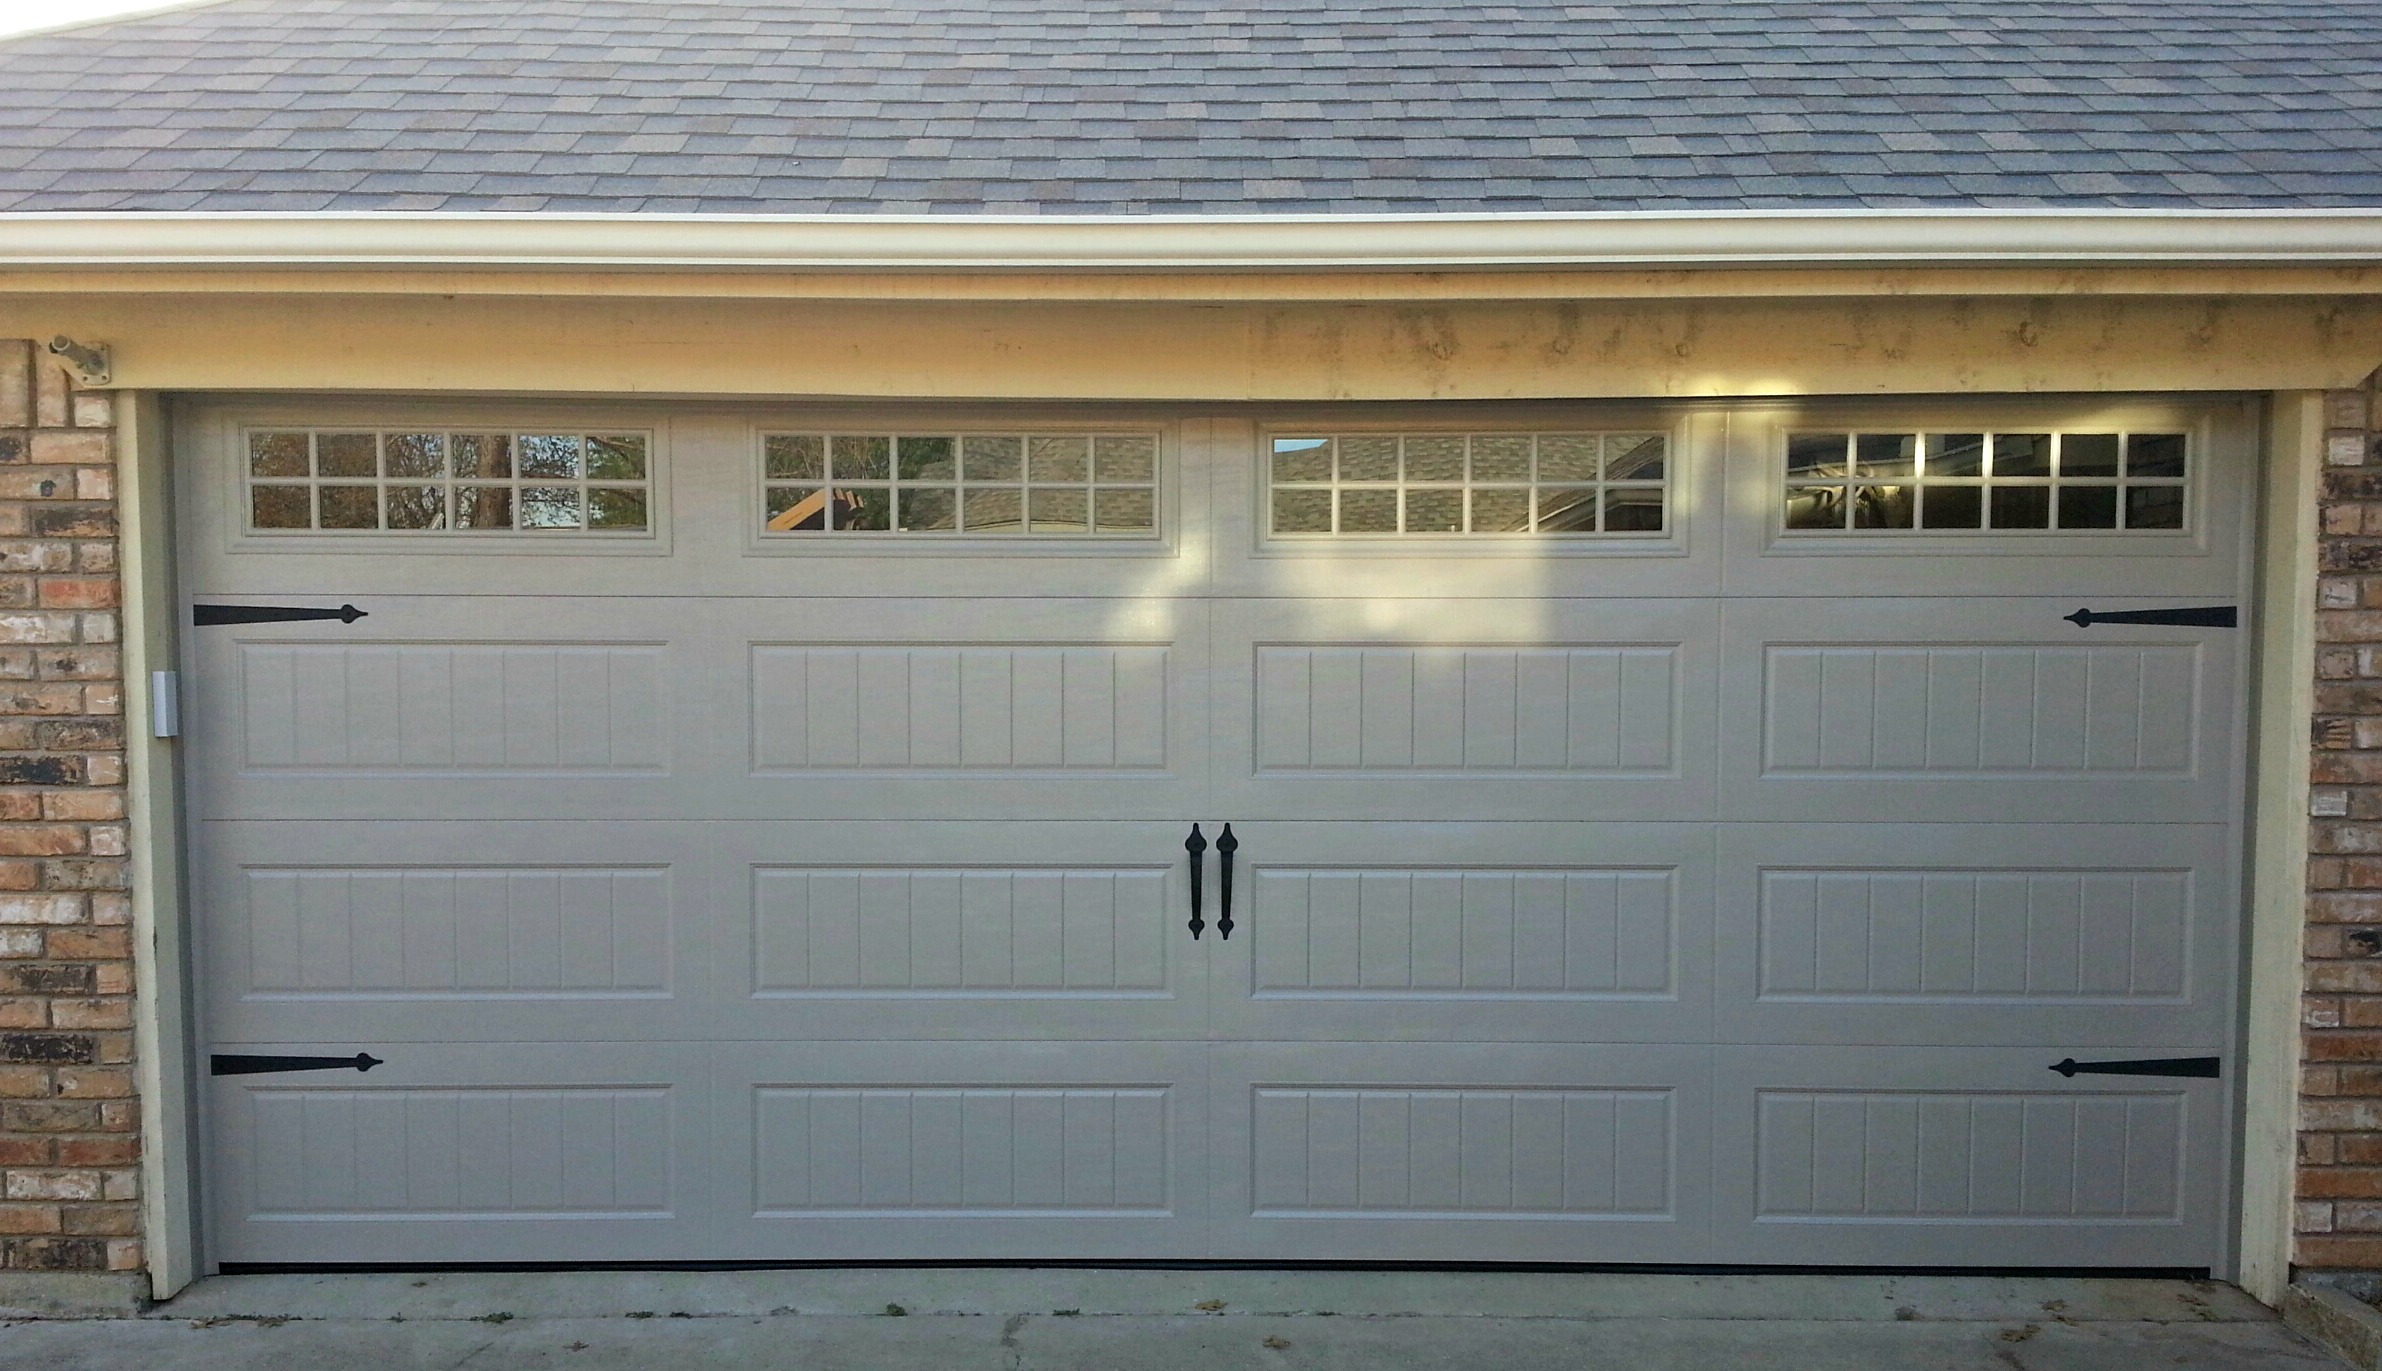  Garage Door Window Inserts Kits with Simple Design